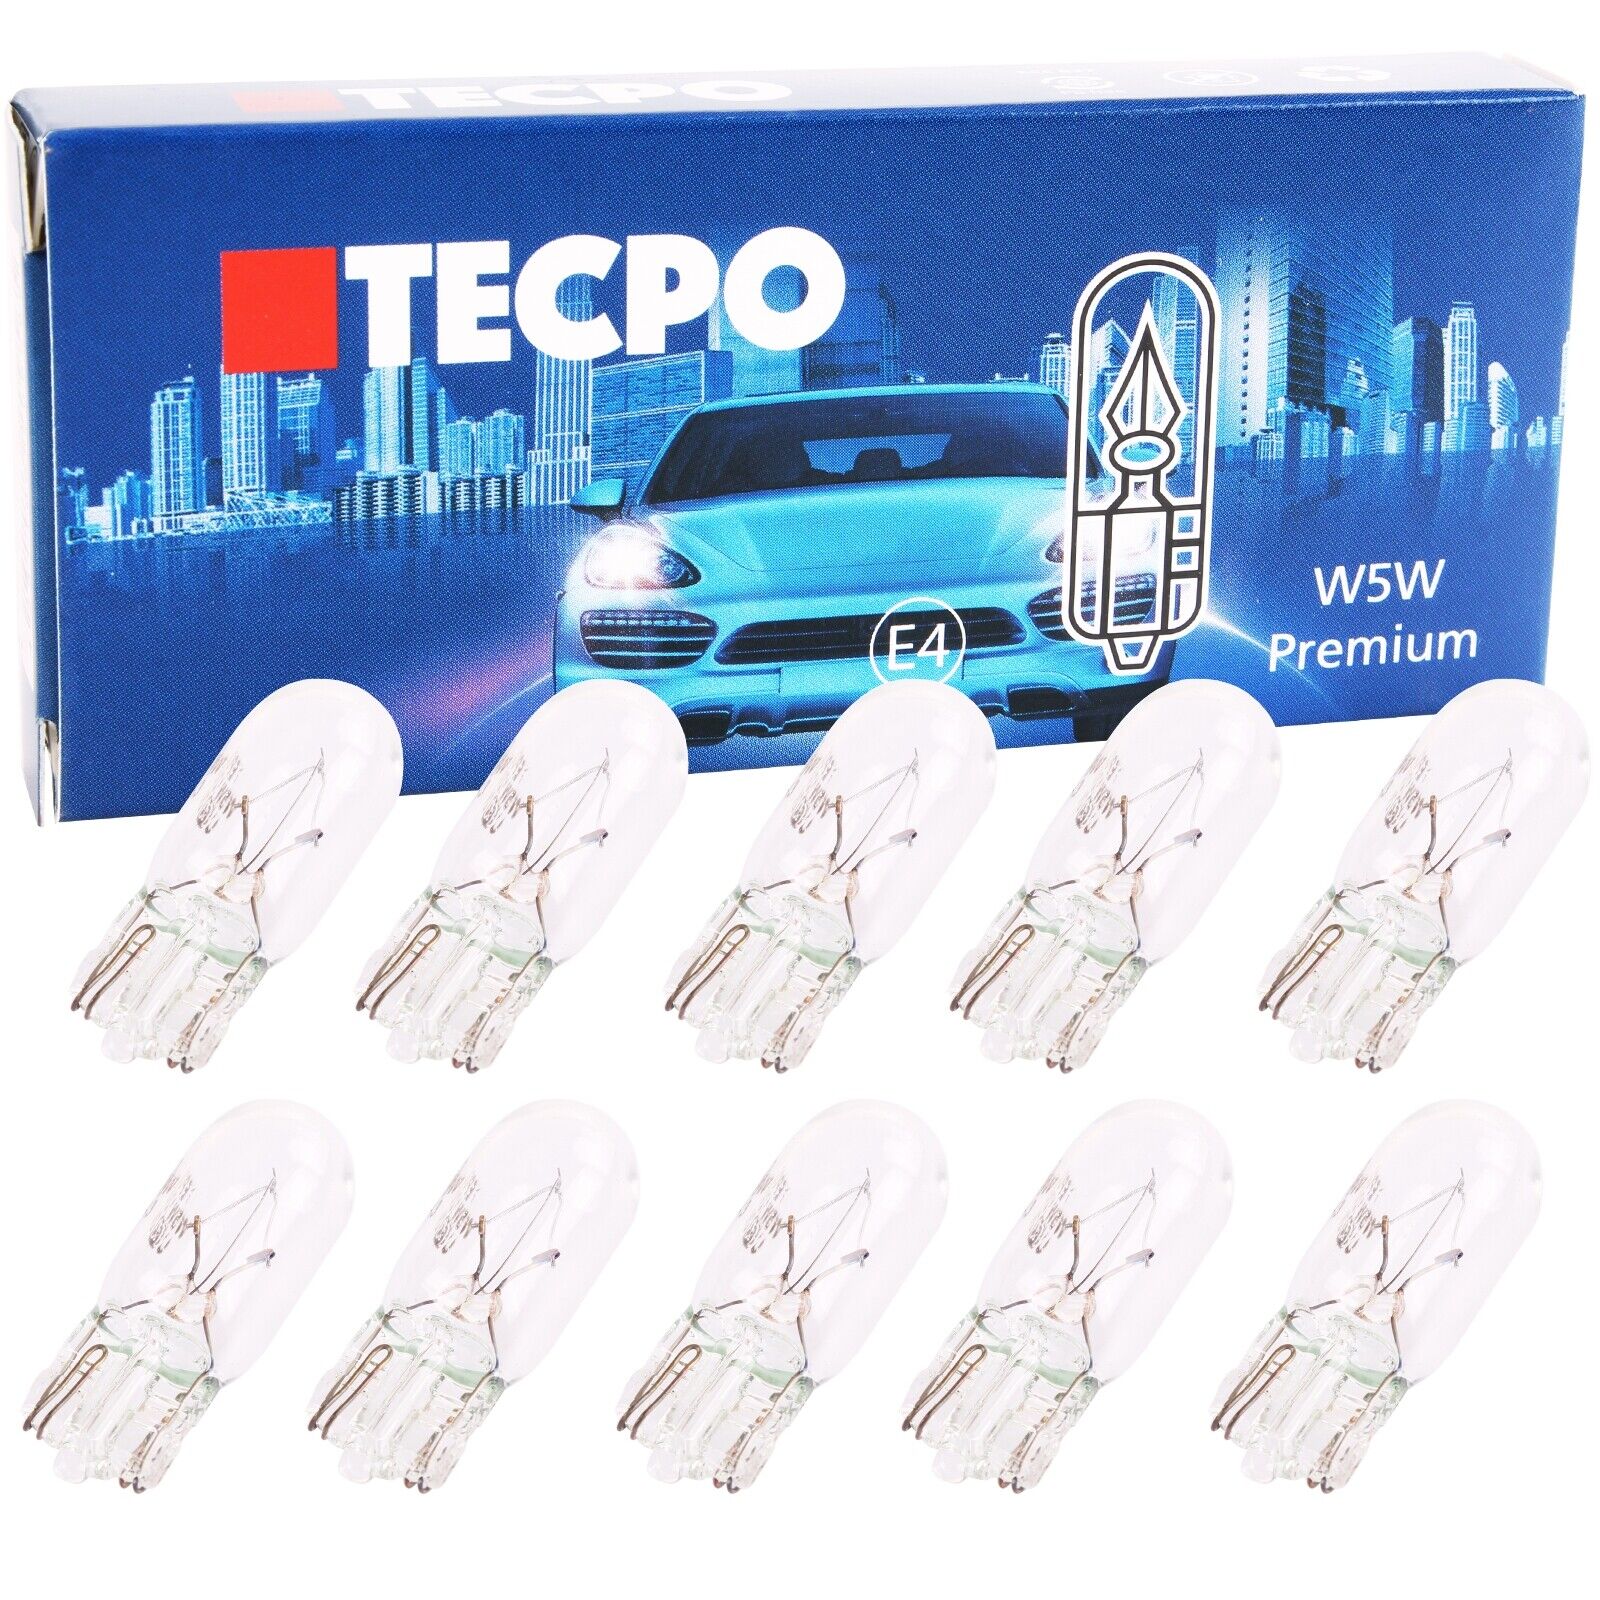 TECPO 50x Glassockel Glühbirnen W5W Standlicht Kennzeichenlich